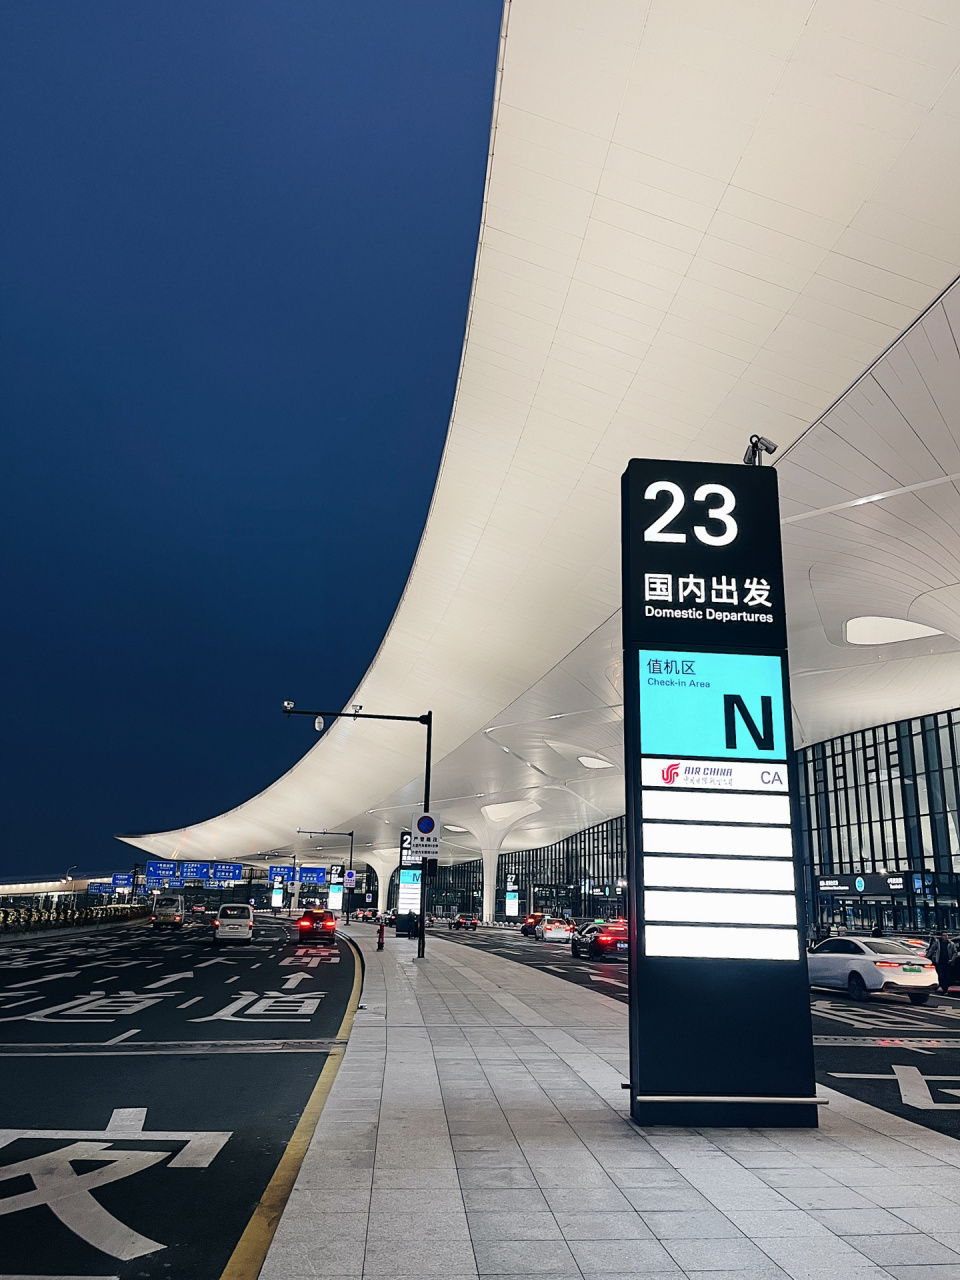 杭州萧山机场新建t4航站楼出发层真漂亮呀 萧山机场新t4出发层真不错